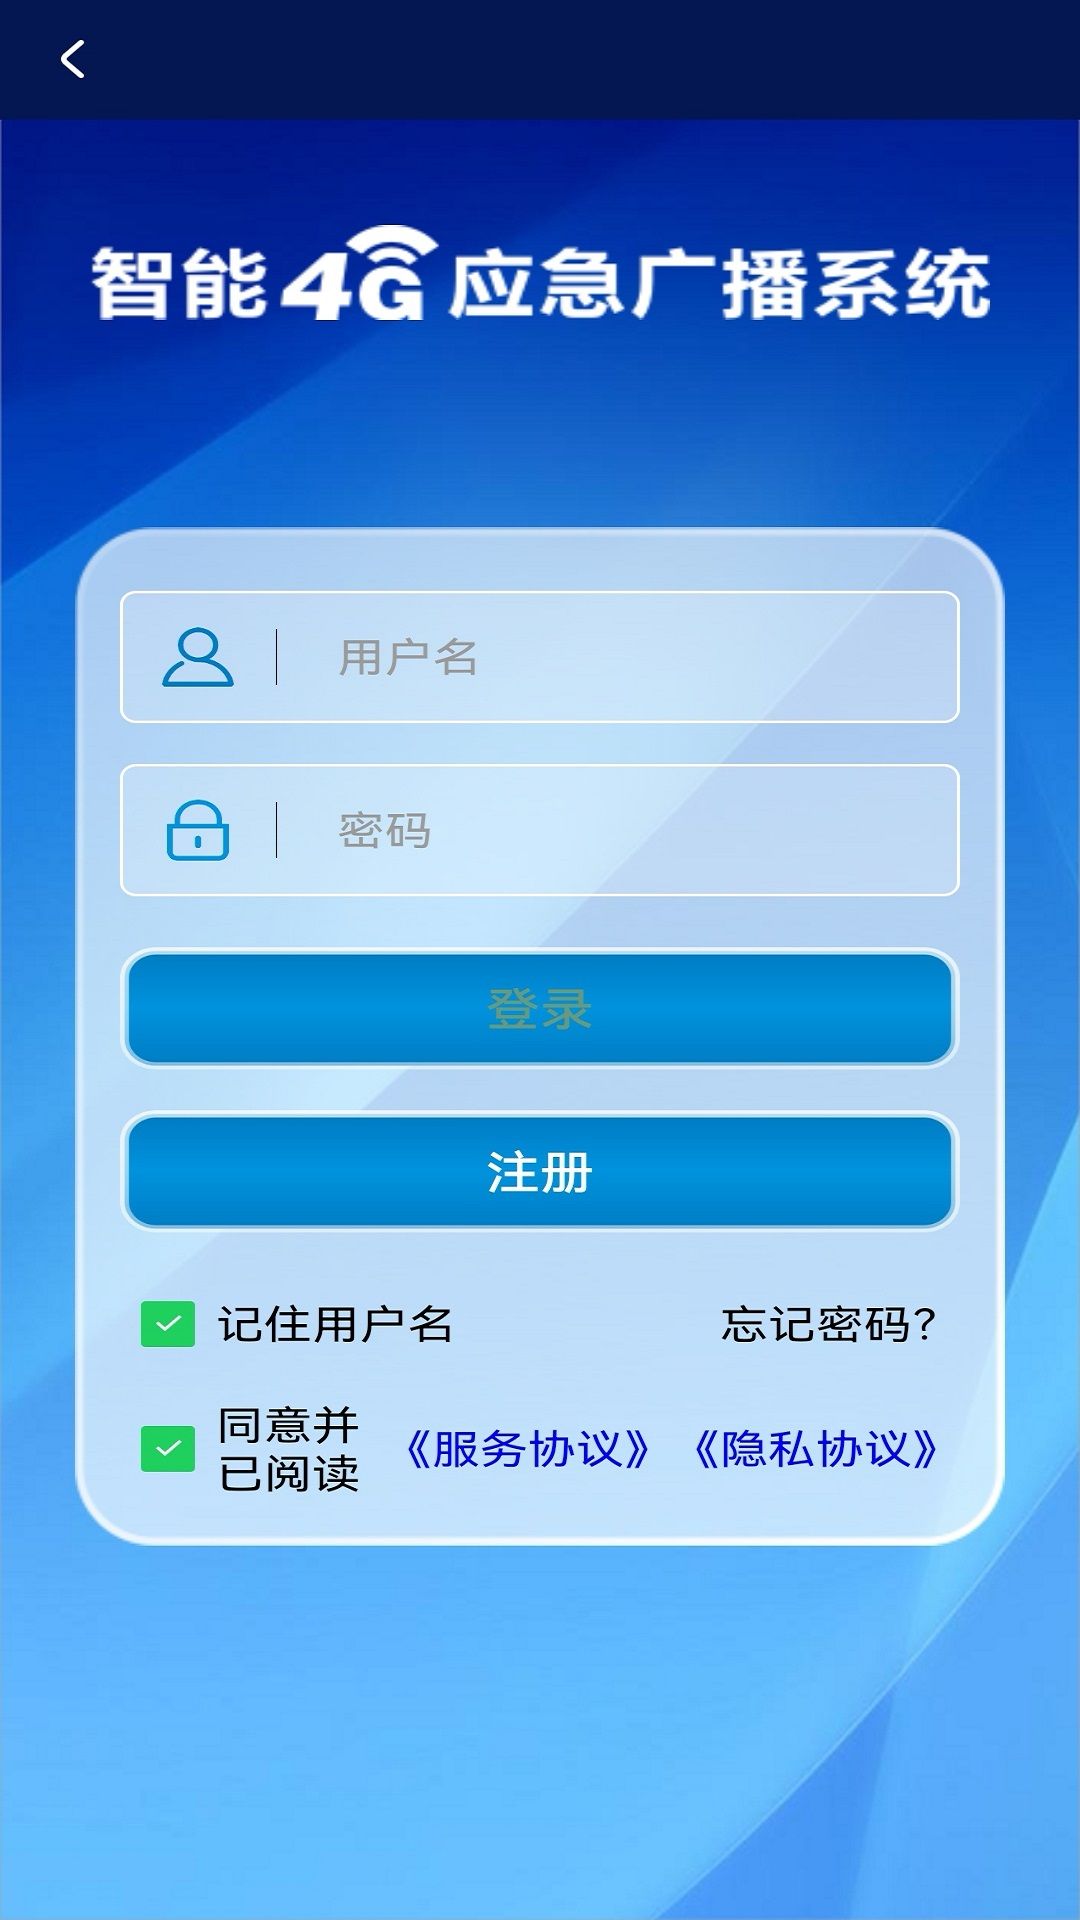 科通云广播平台官方版下载app图片2